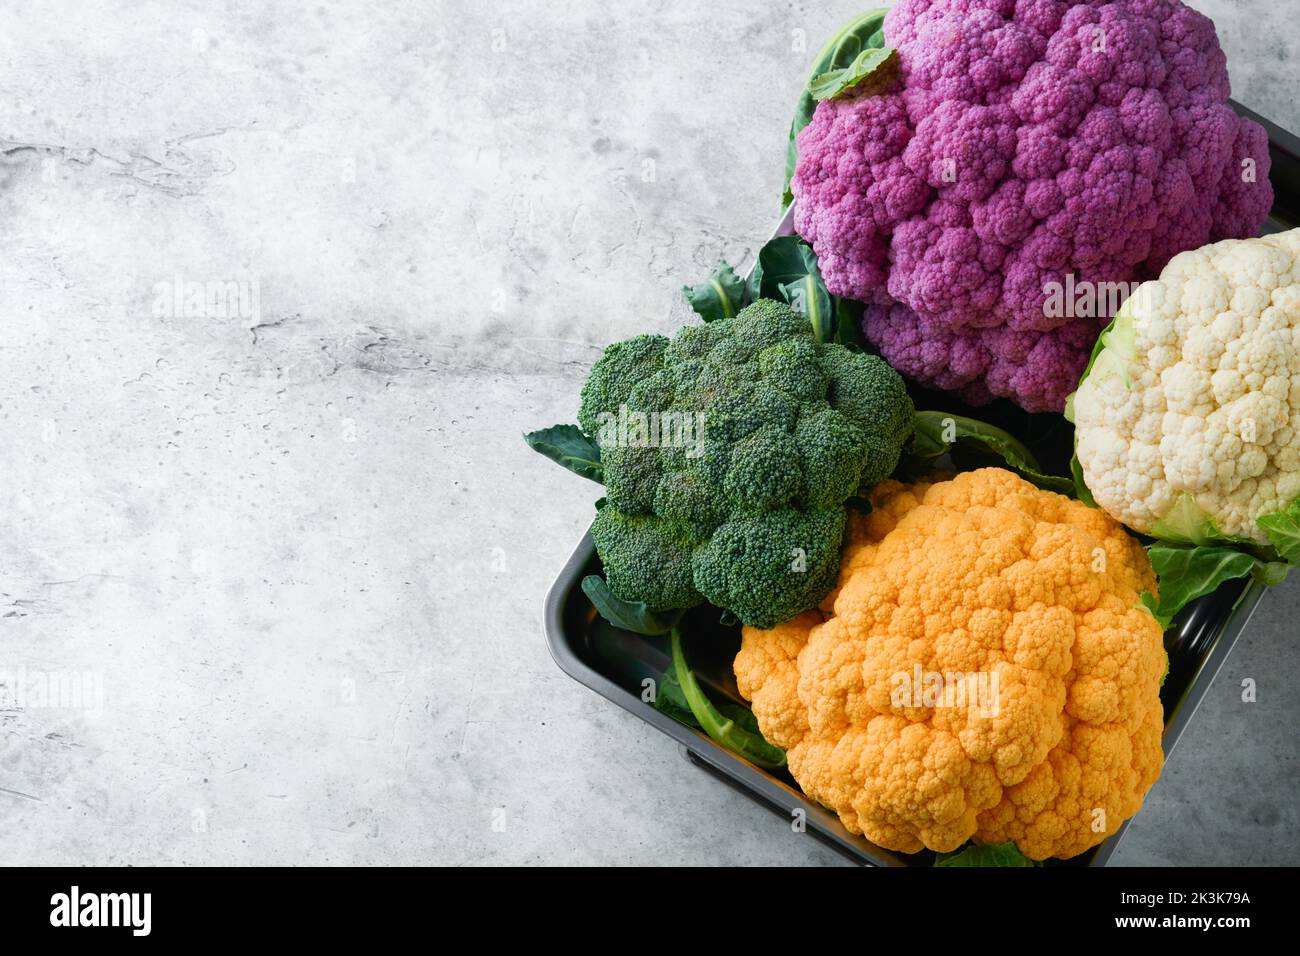 Colorfu-Blumenkohl. Verschiedene Arten von Blumenkohl auf grauem Beton Hintergrund. Violette, gelbe, weiße und grüne Farbkabbage. Brokkoli und Romanesco. Stockfoto